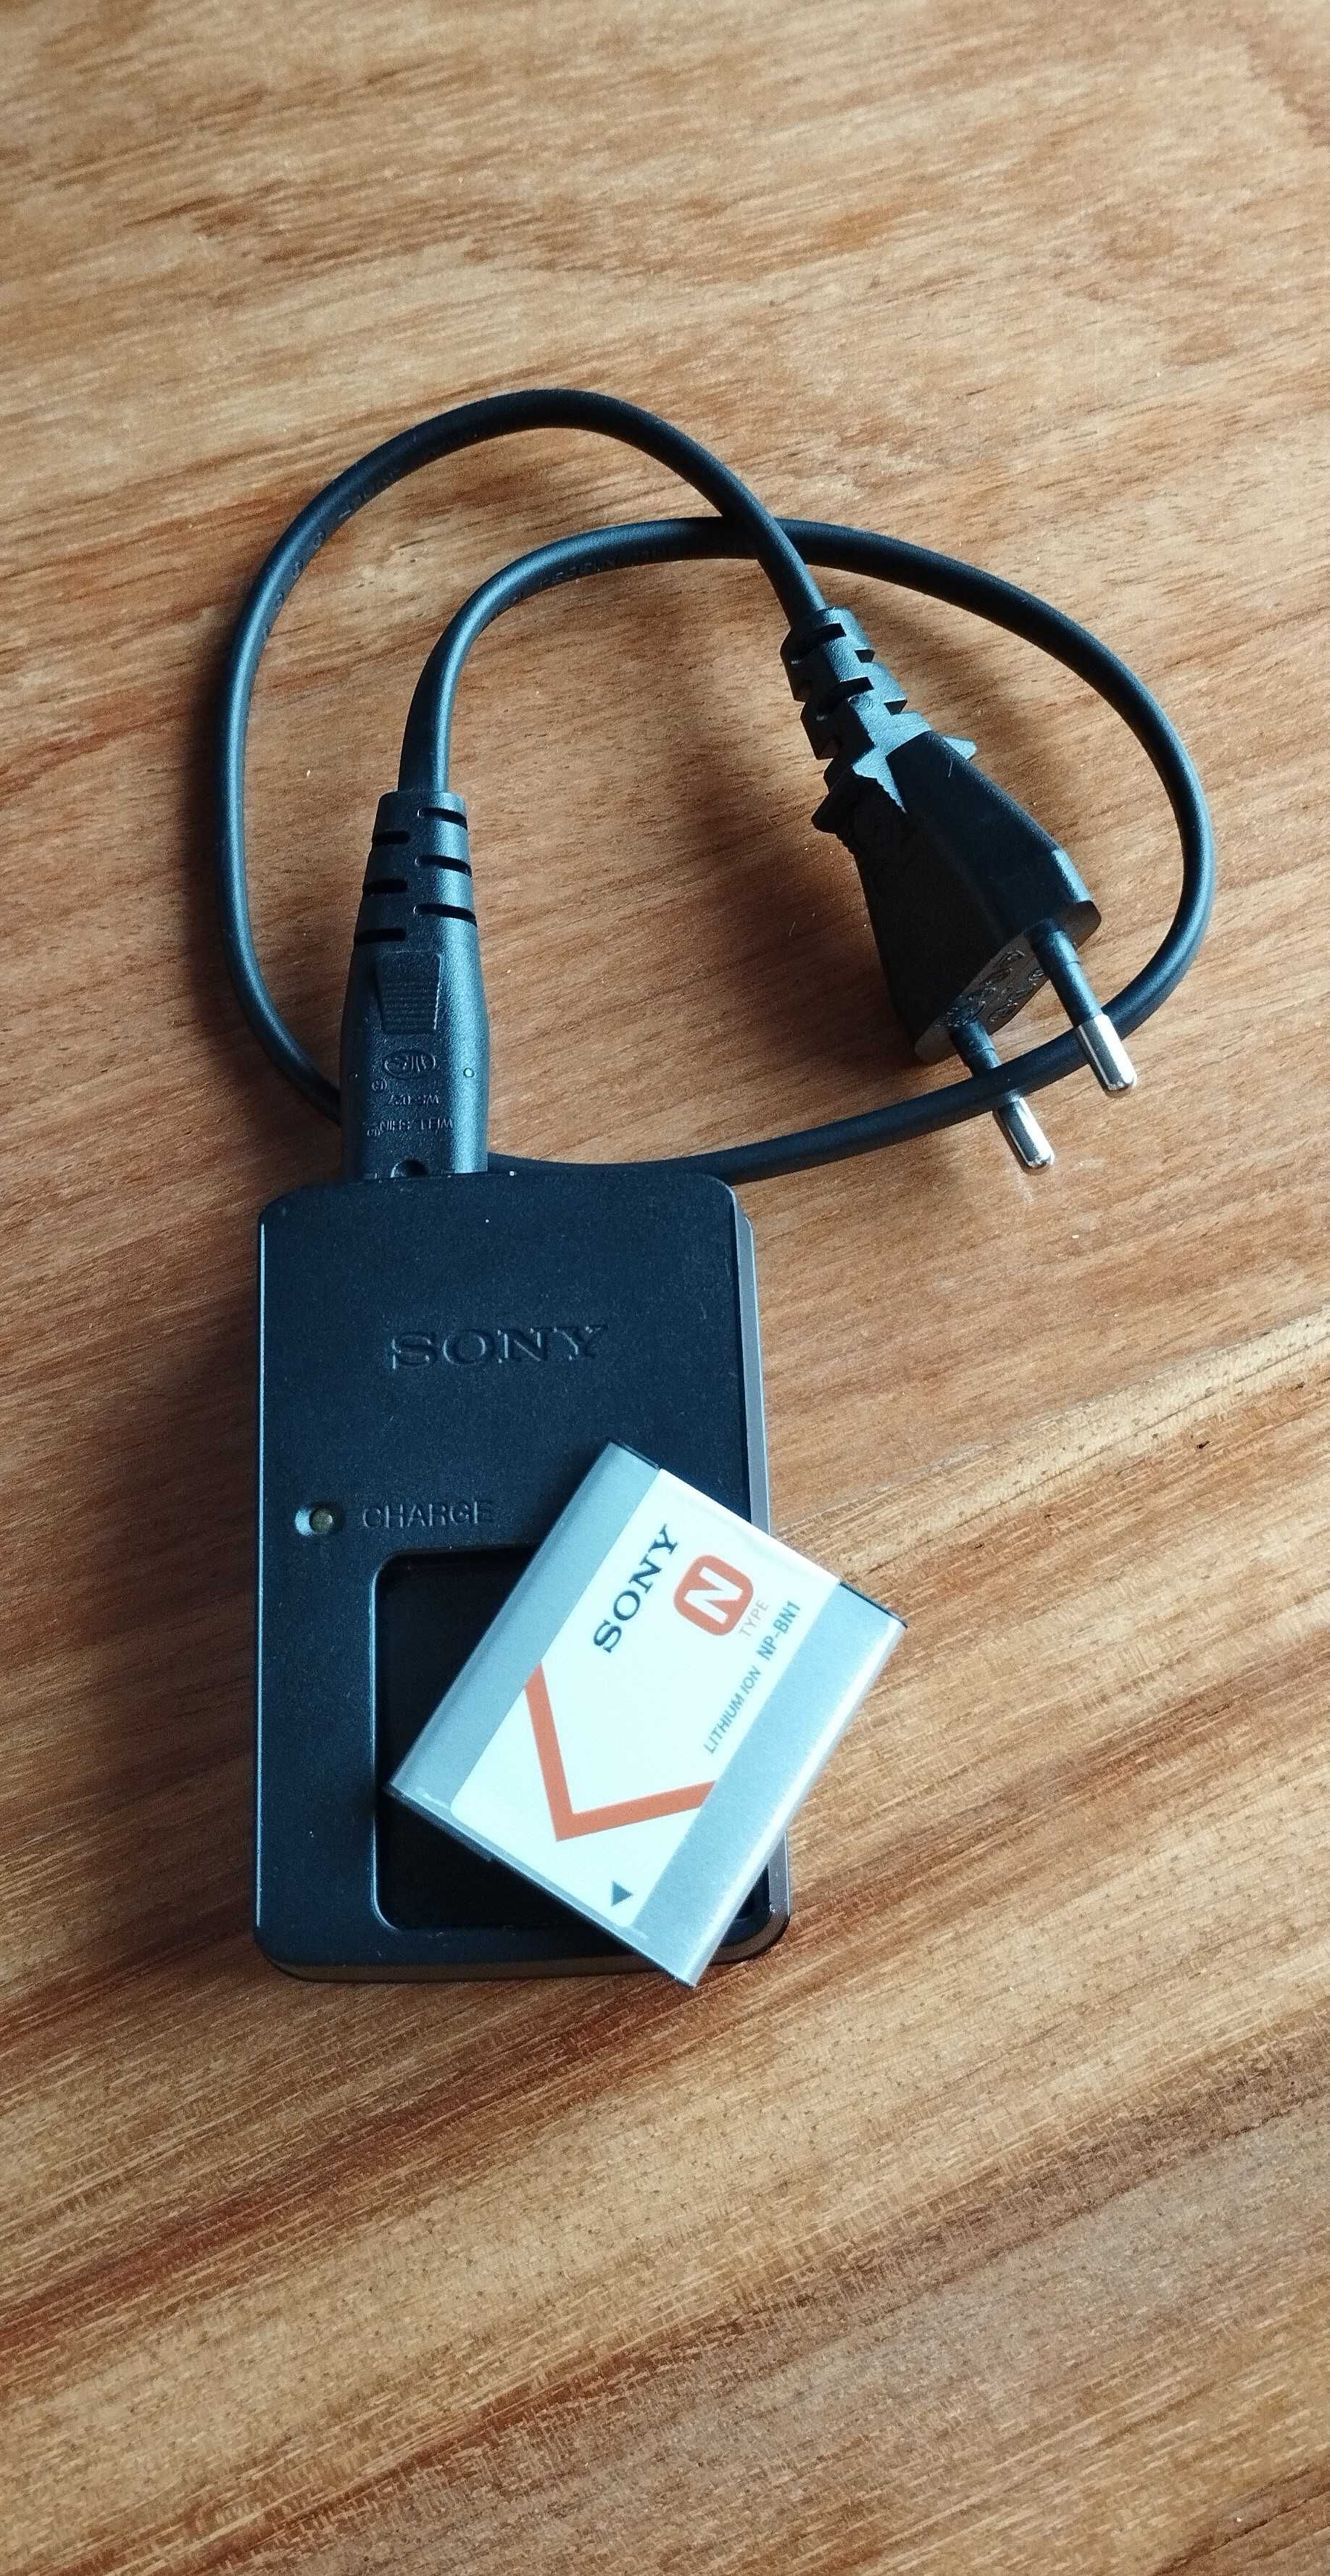 Sony Cyber-Shot (DSC-W320) - c/ oferta de cartões de memória